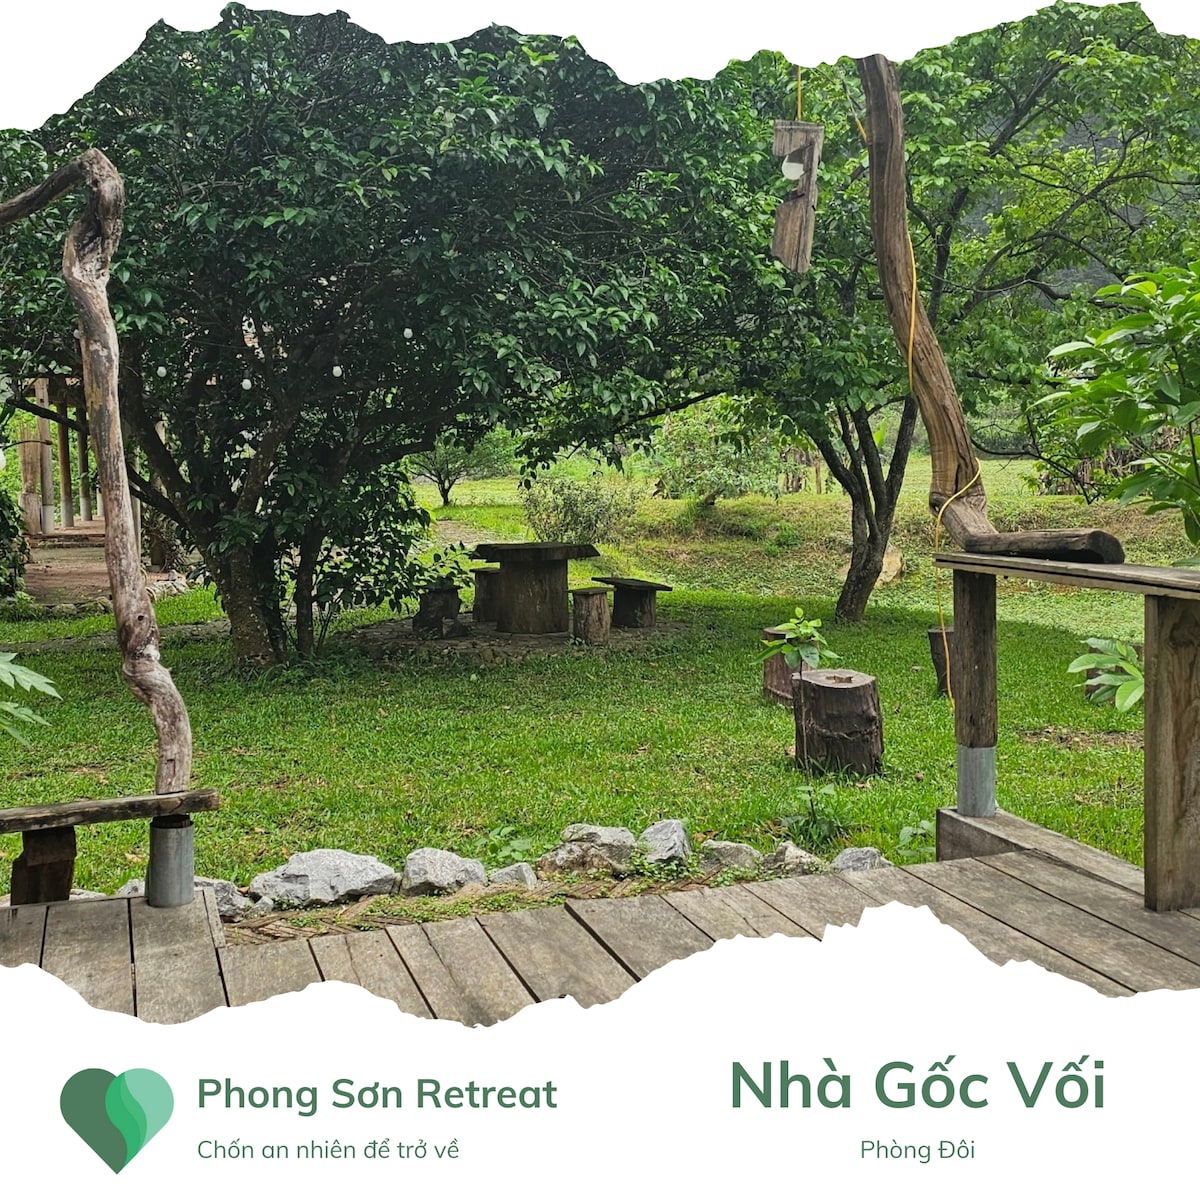 Nhà Gốc Vối - Phong Sơn Retreat